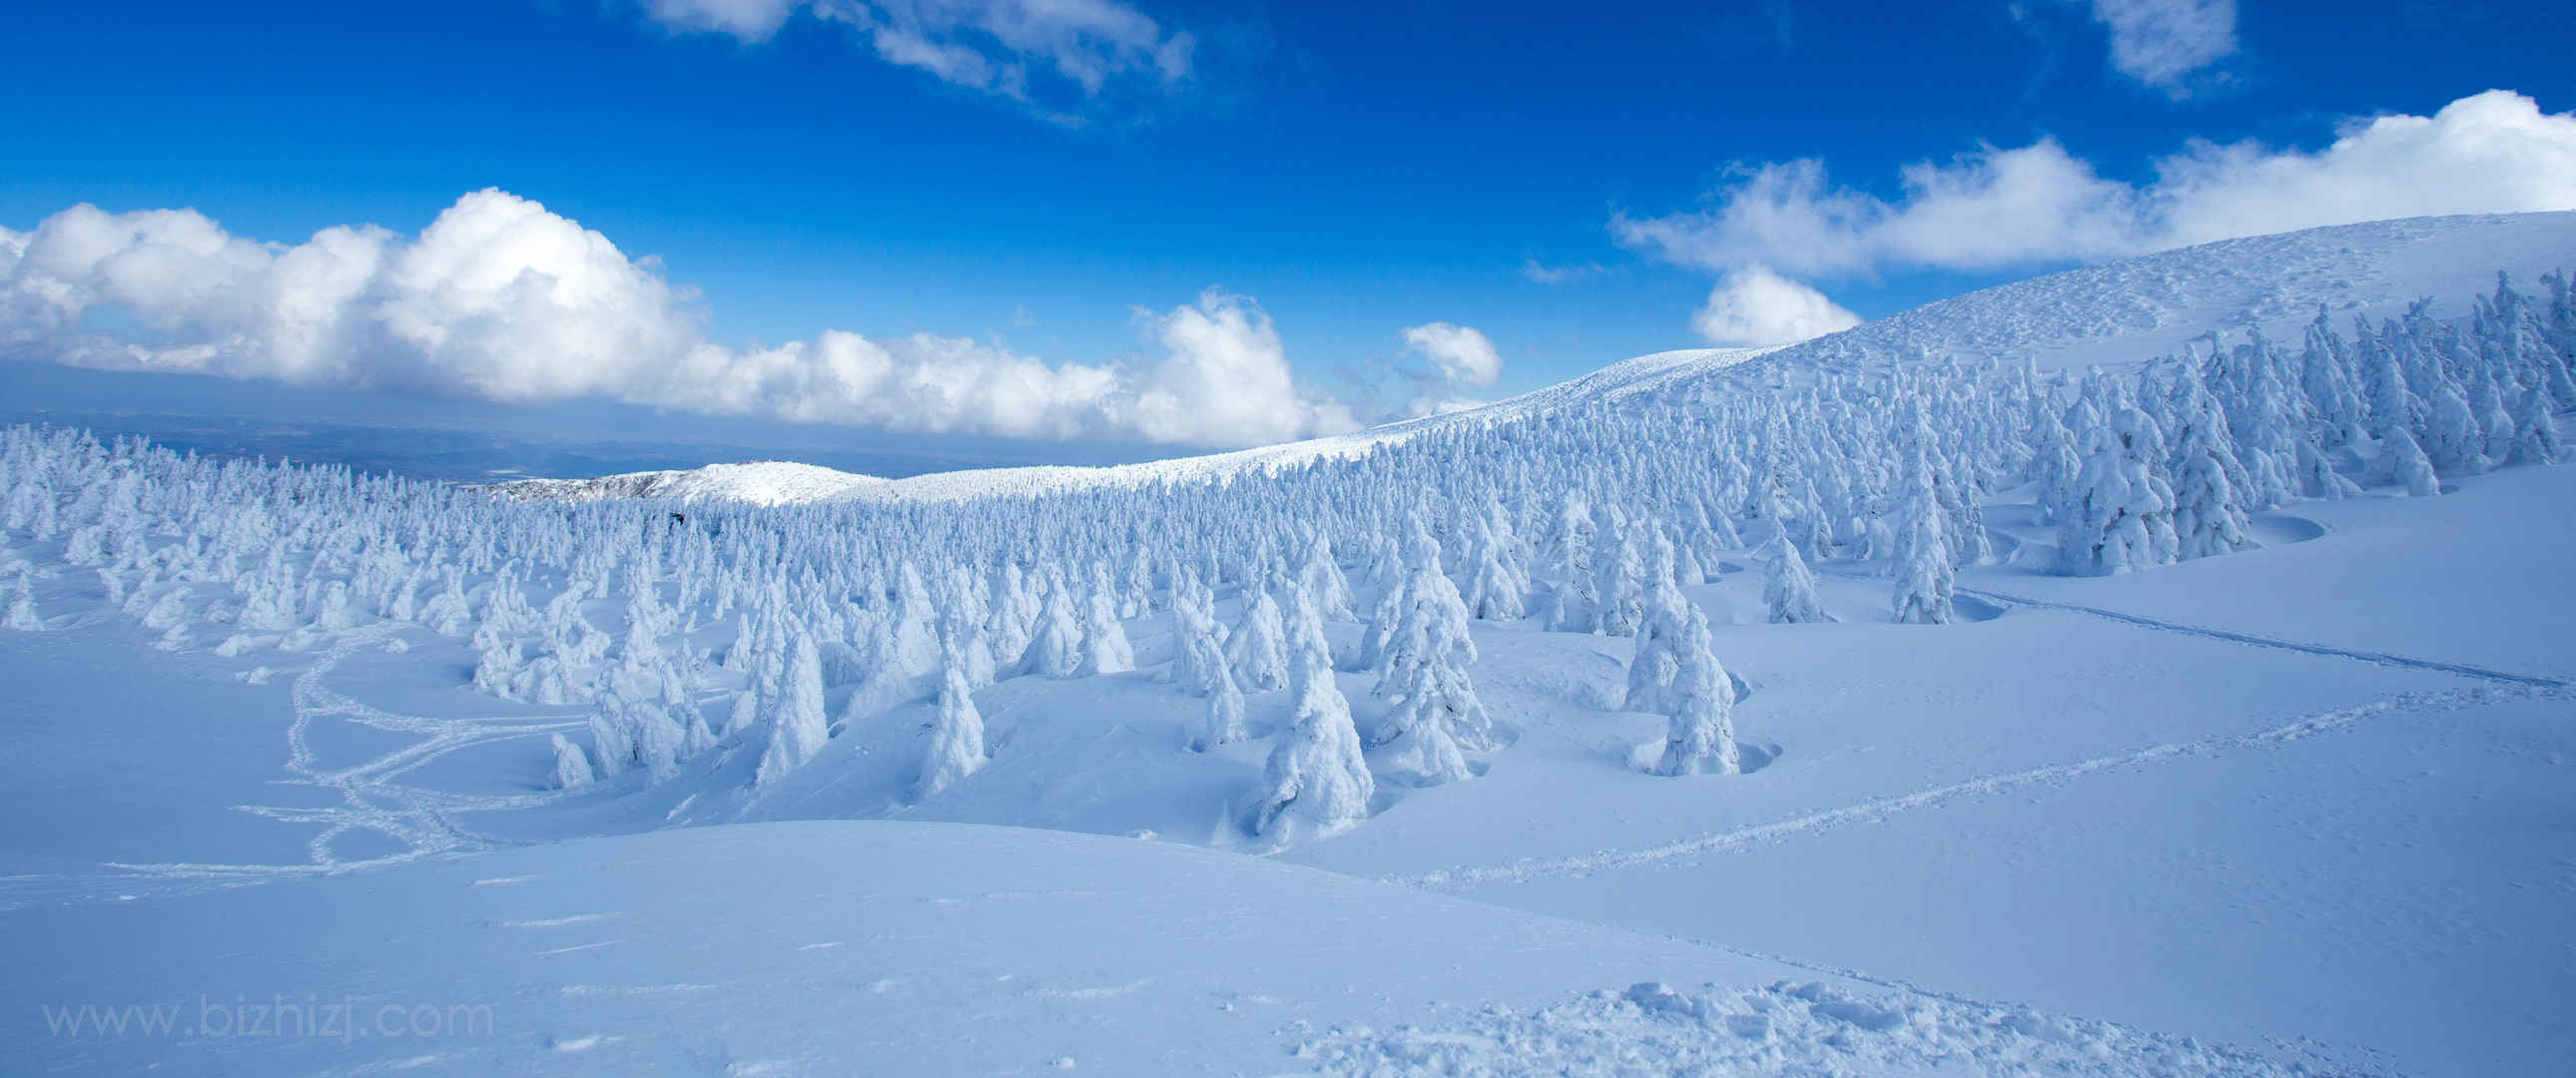 冬天 蓝天 雪景壁纸-